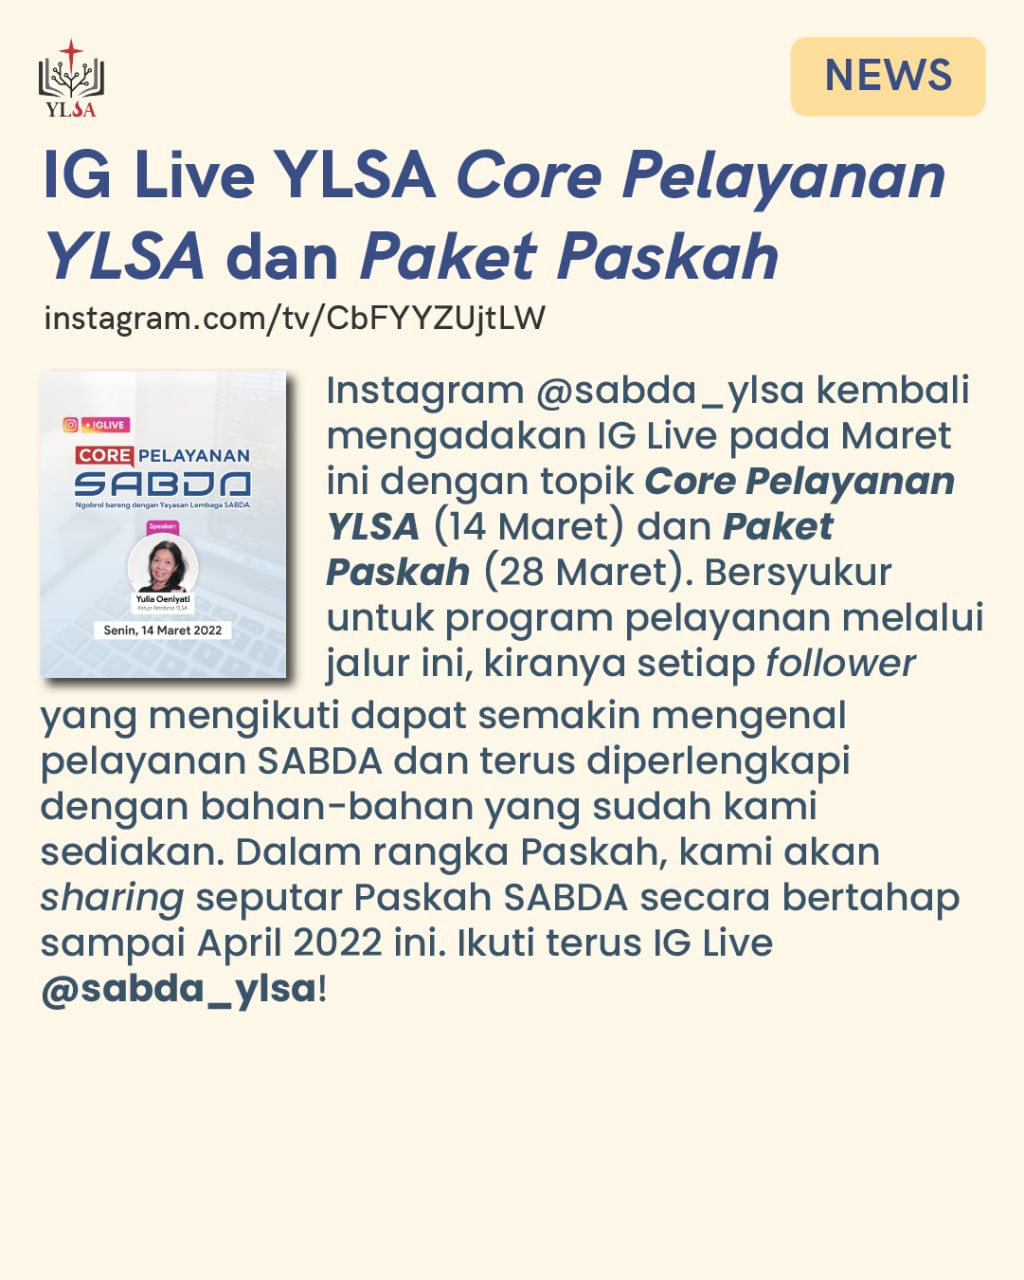 Bersyukur atas pelayanan IG Live @sabda_ylsa dengan topik "Core Pelayanan YLSA" dan "Paket Paskah".